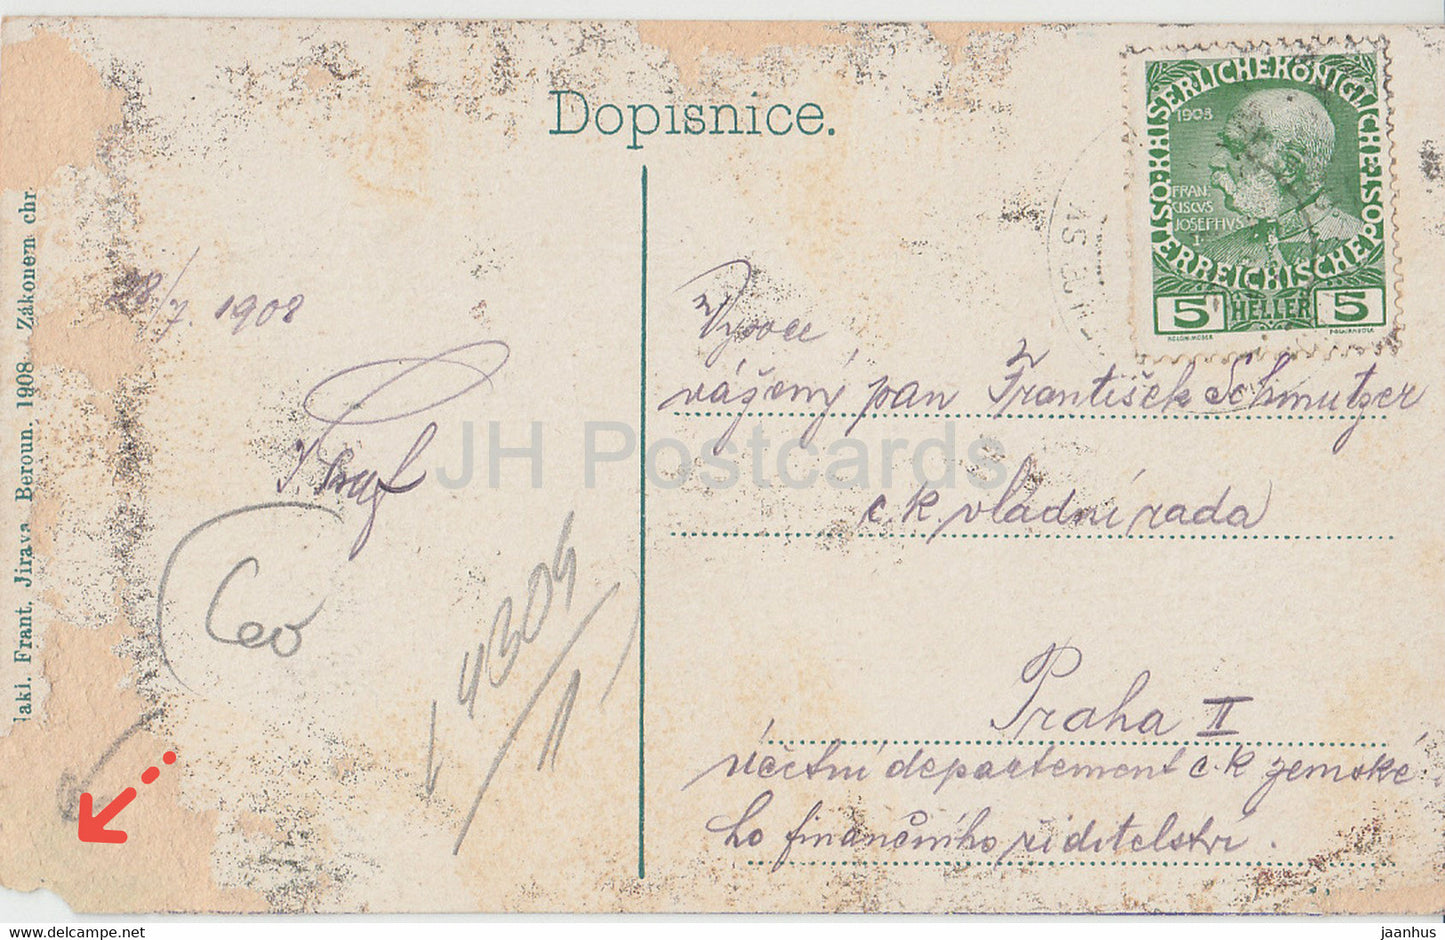 Sv Jan pod Skalou - old postcard - 1908 - Czech Republic - used